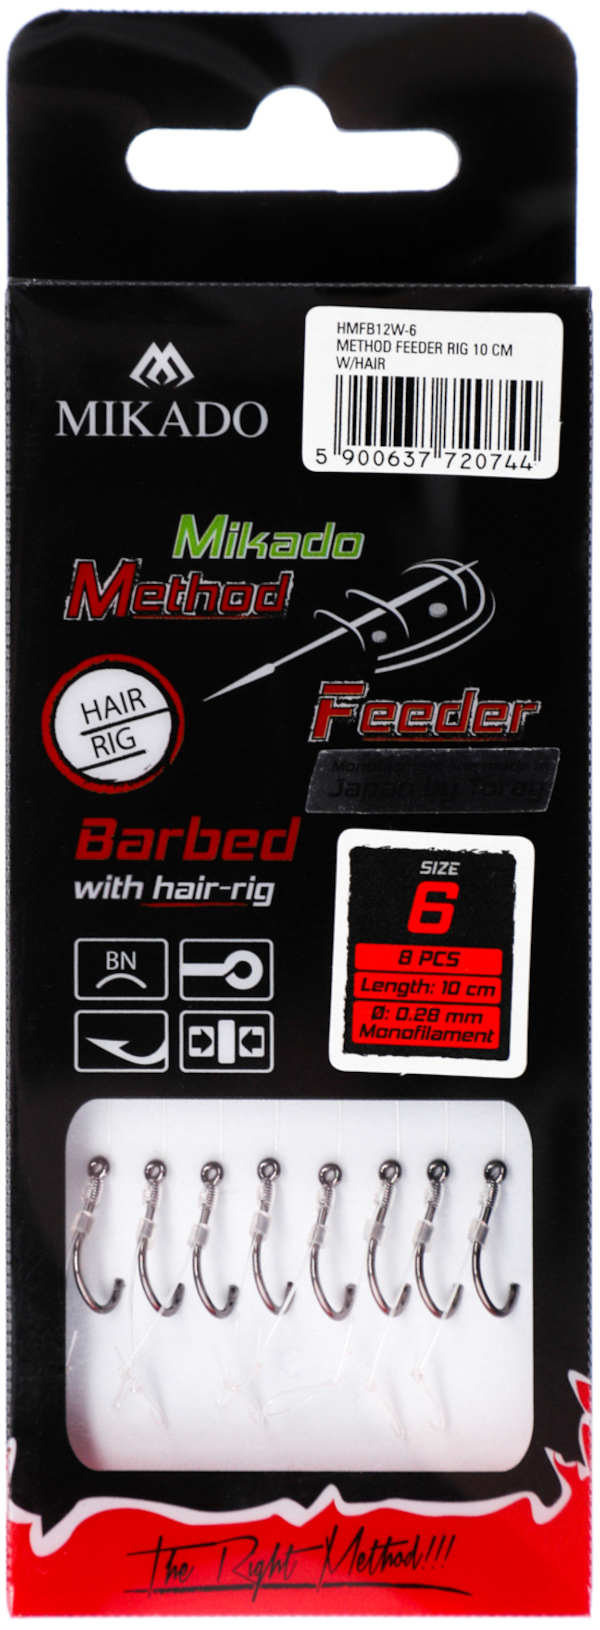 Bas de ligne Mikado Method Feeder Rig avec Cheveux 8 pièces